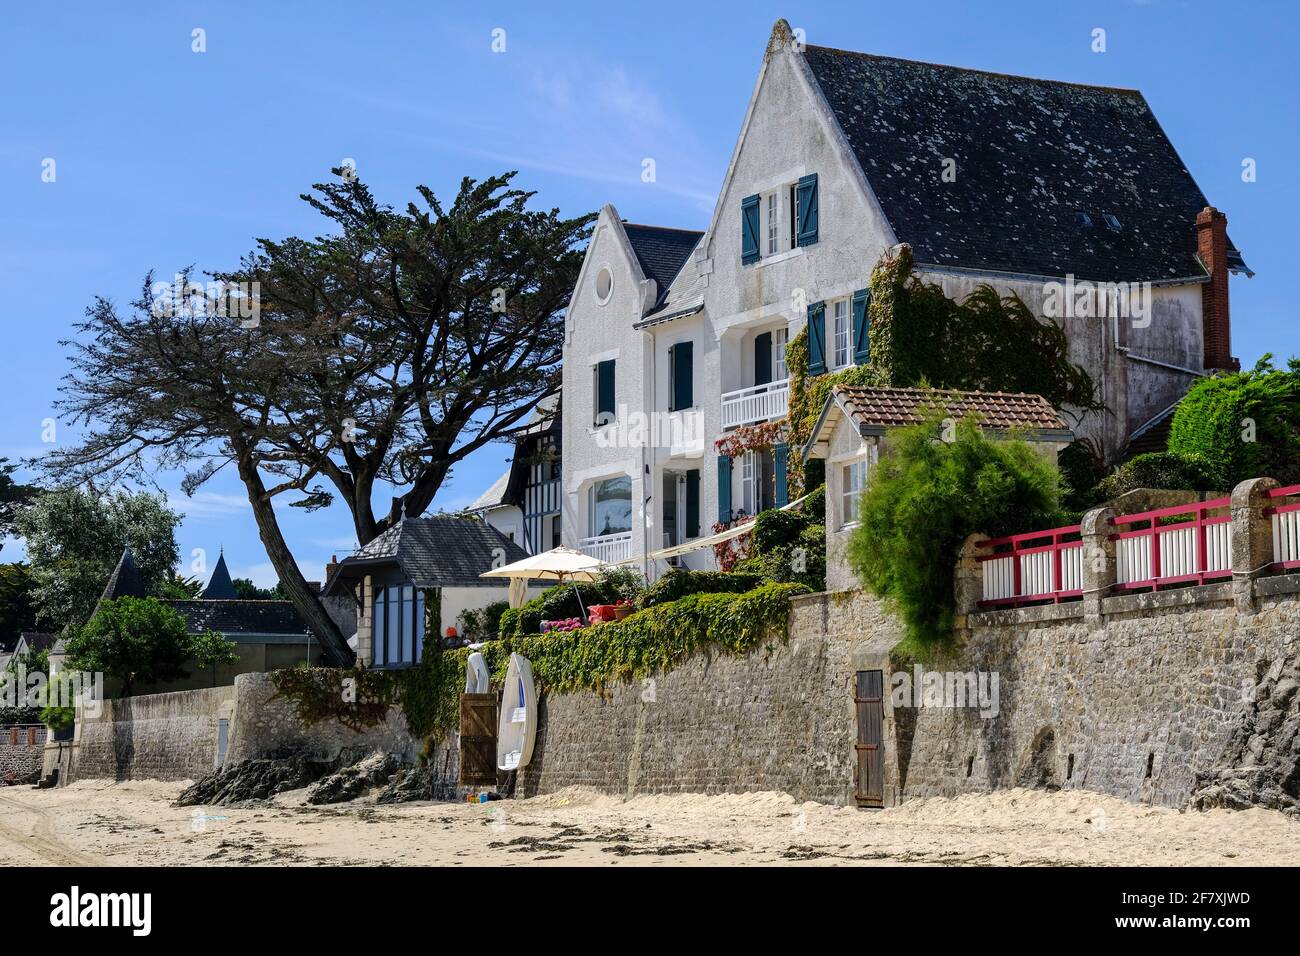 Frankreich, Le Pouliguen, 07.07.2020: alte Strandvilla am felsigen Strand von Le Pouliguen an der franzoesischen Atlantikkueste im Departement Loire-A Stock Photo